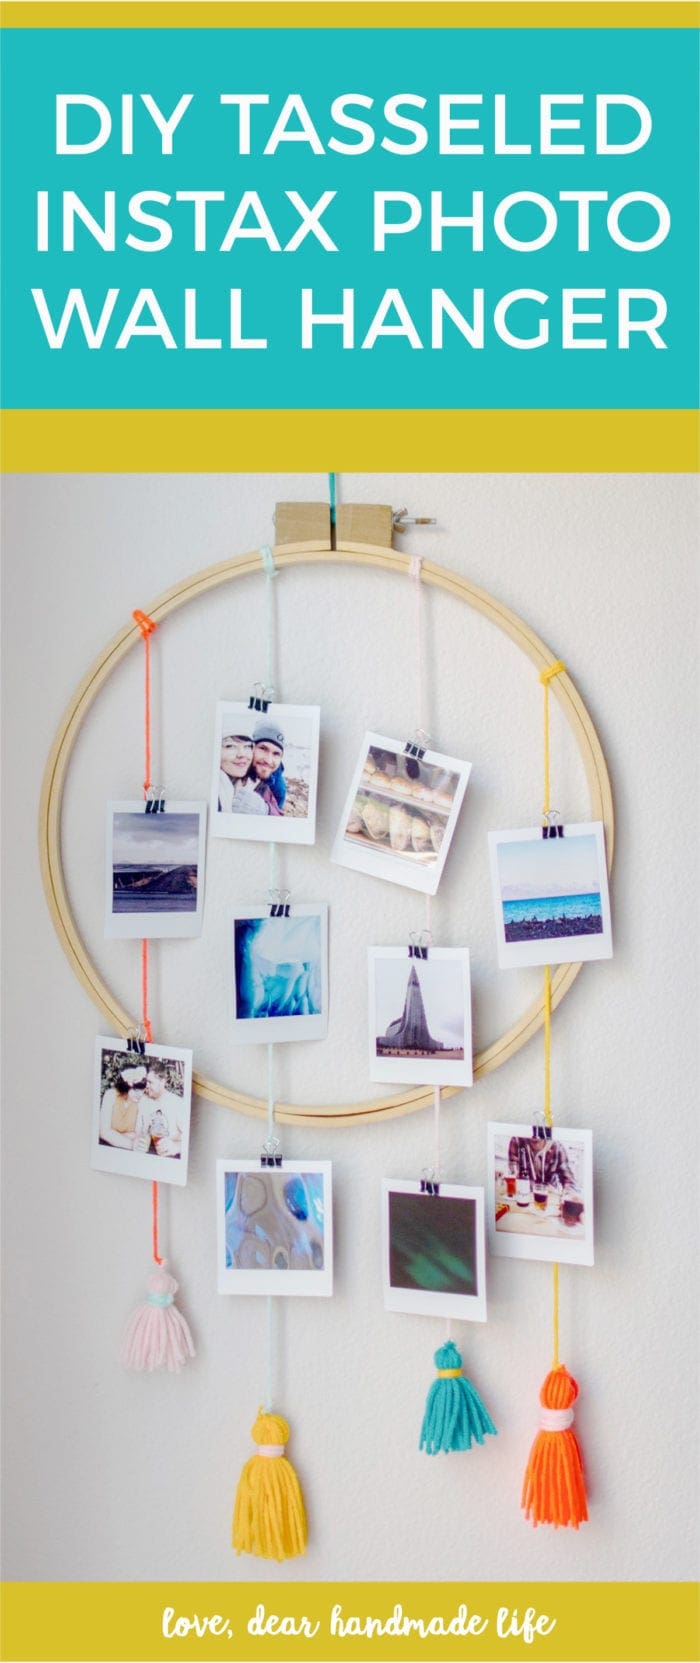 DIY tasseled instax Wall Hanger from Dear Handmade Life